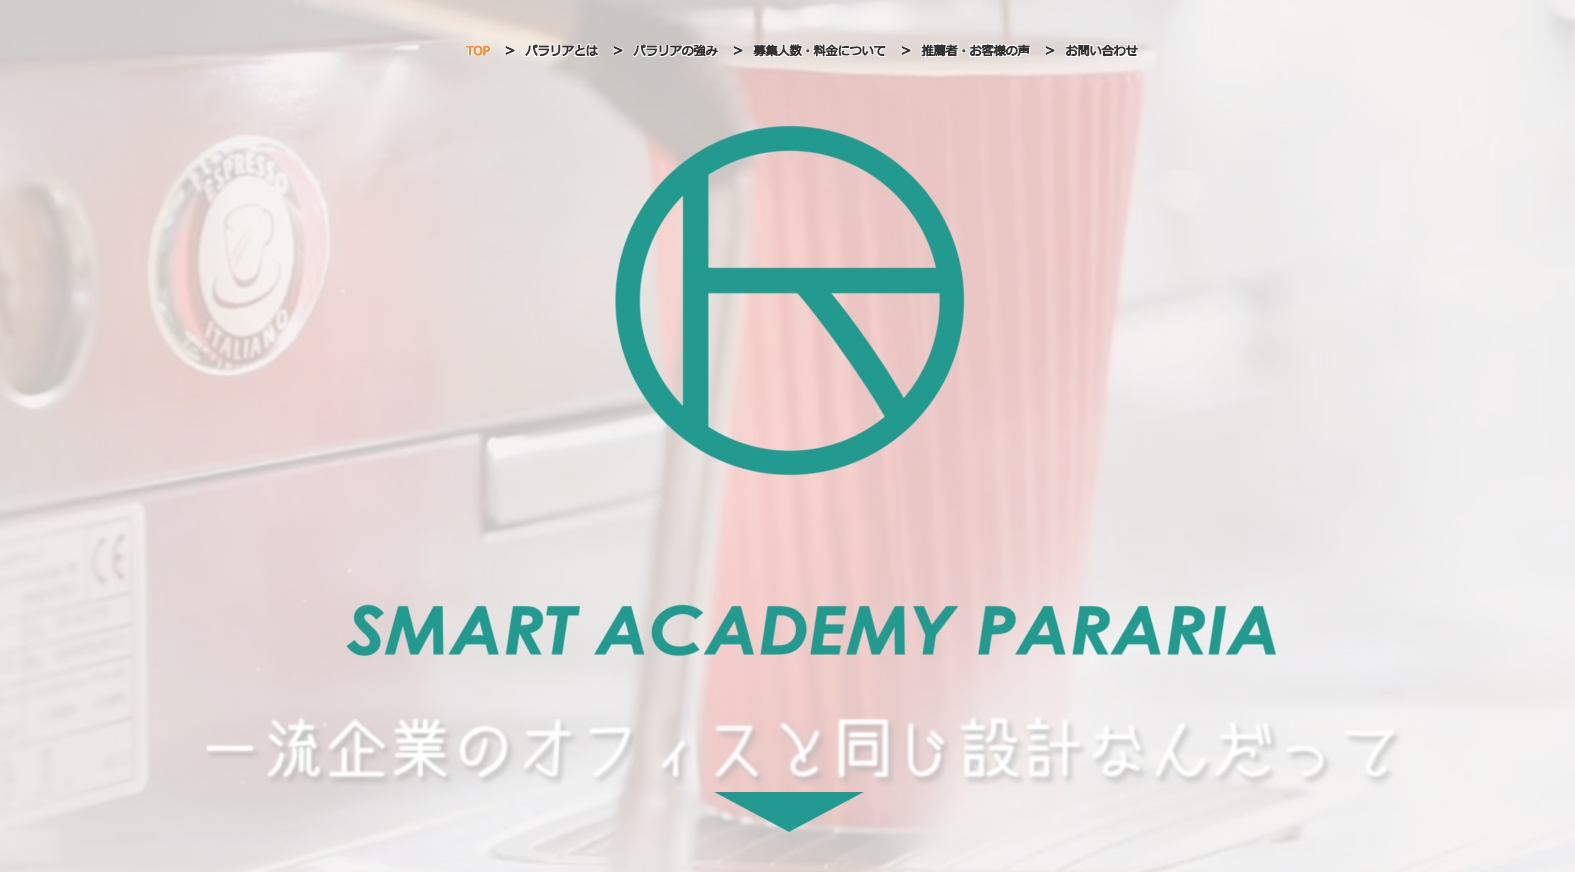 Smart Academy PARARIA ランディングページ